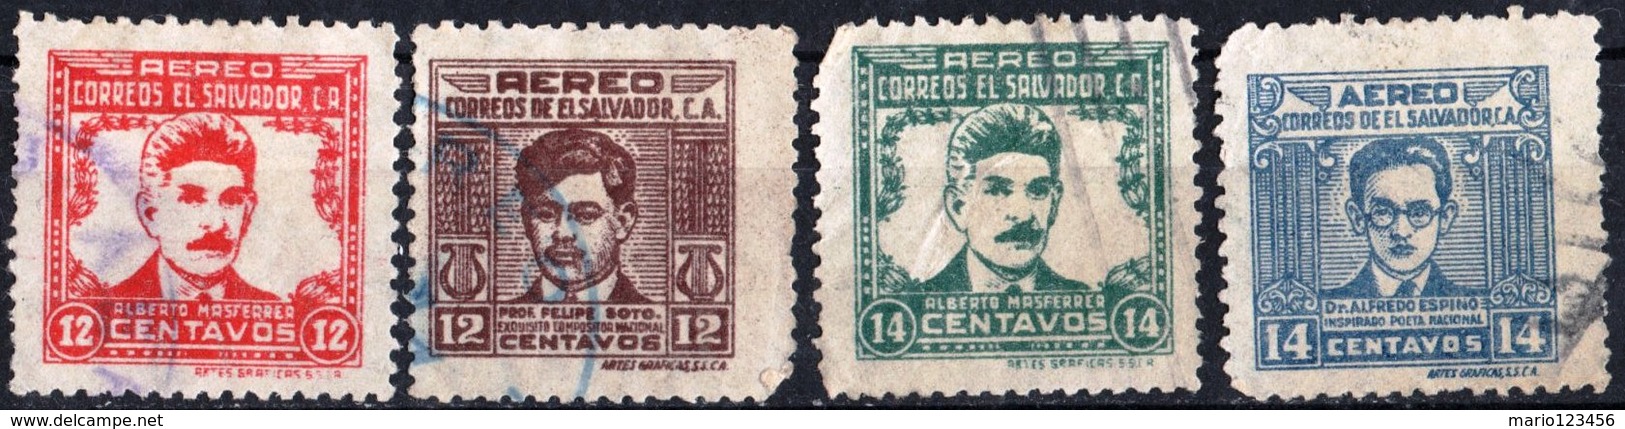 EL SALVADOR, POSTA AEREA, AIRMAIL, COMMEMORATIVI, 1946-1947, FRANCOBOLLI USATI,  Scott C102,C103,C106,C107 - El Salvador